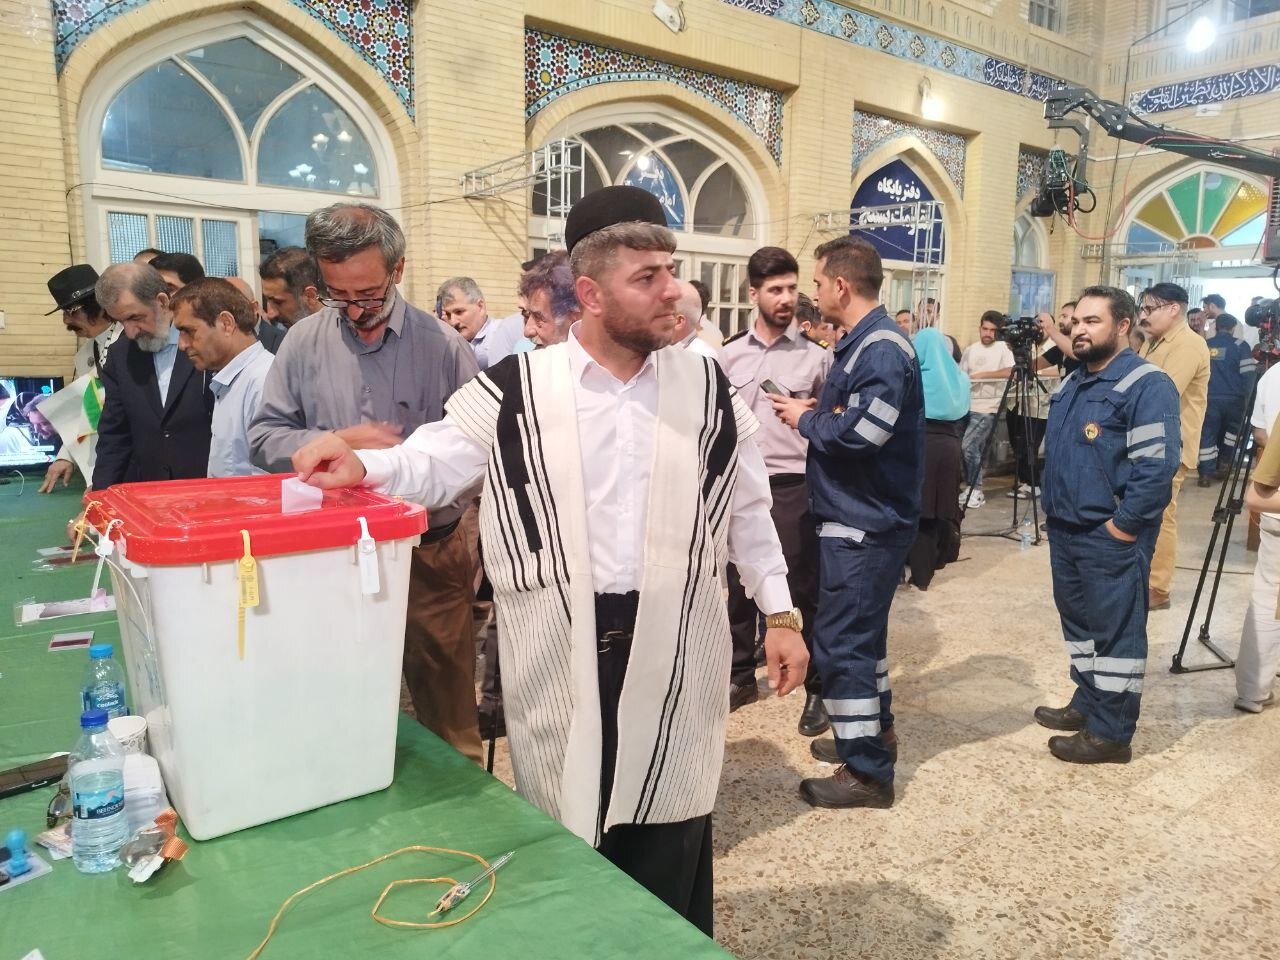 حضور اقوام بختیاری با لباس محلی در مسجد لرزاده